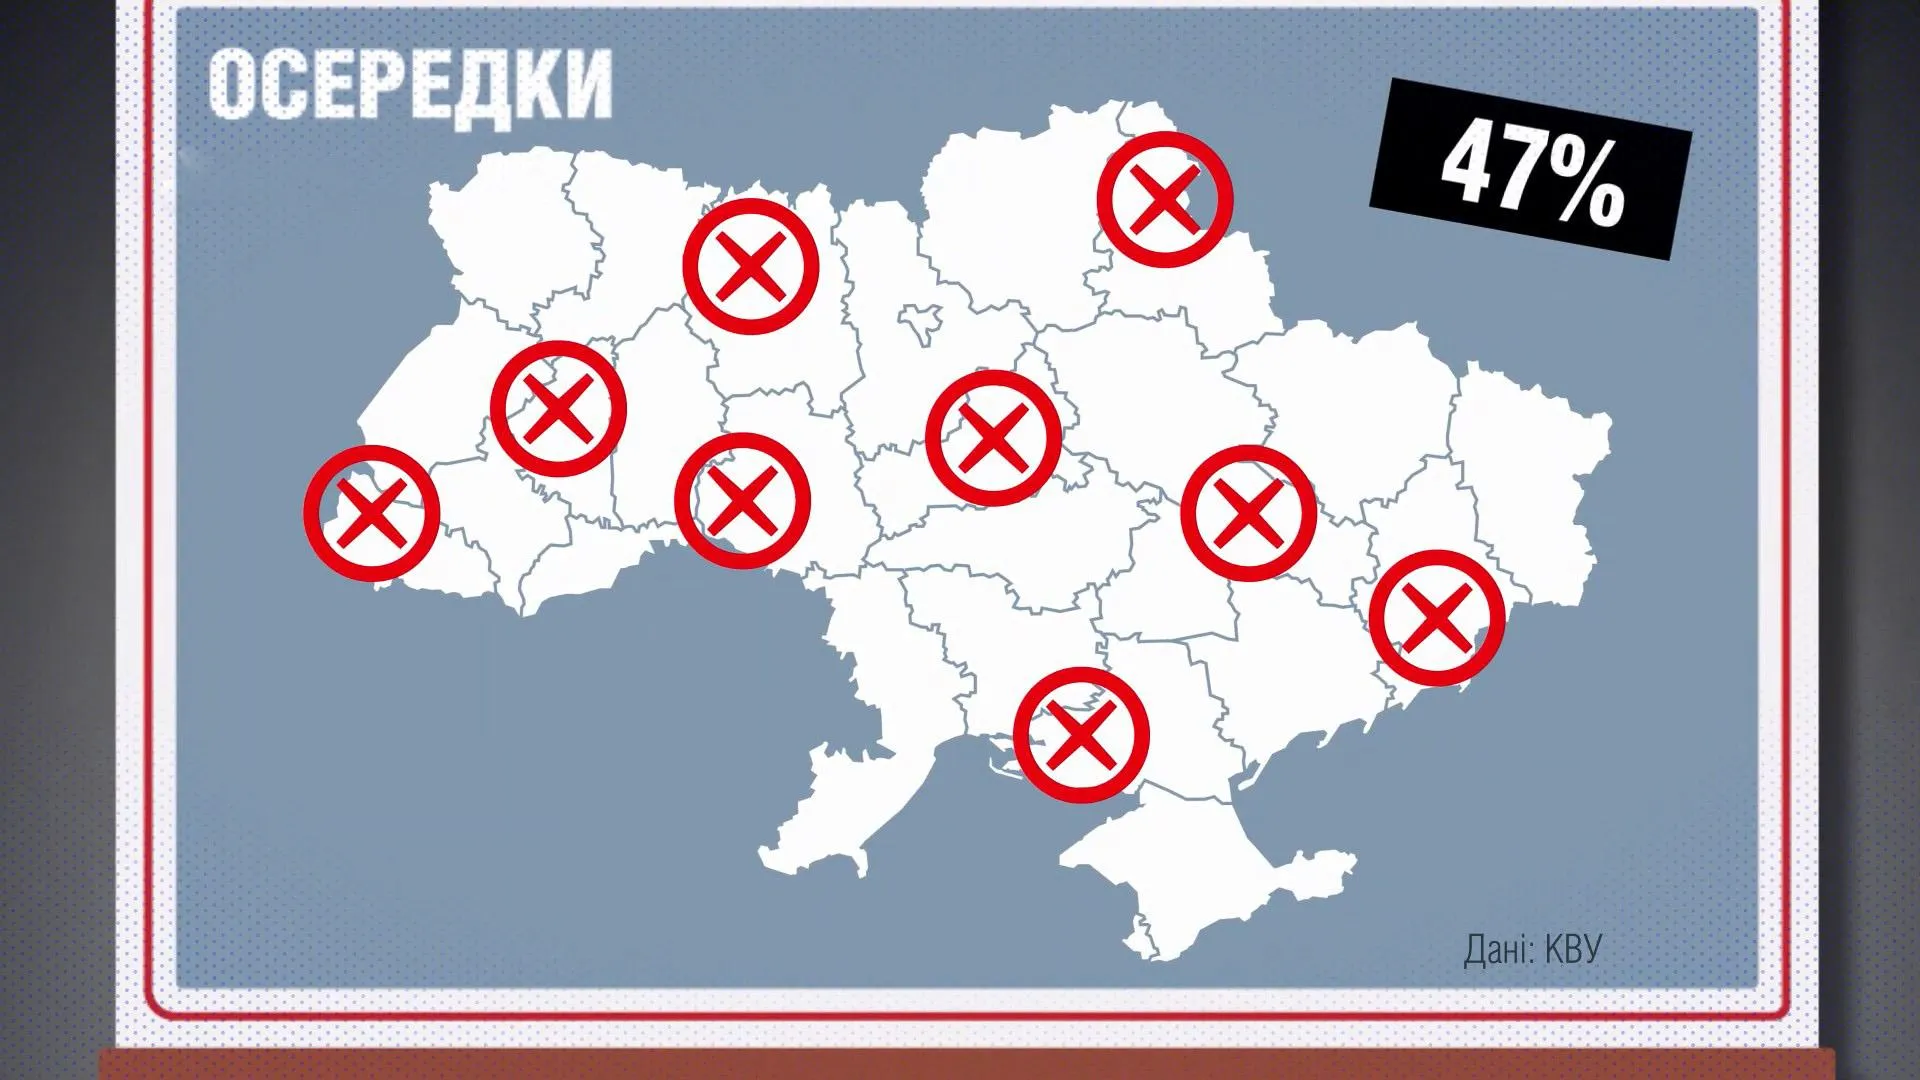 політичні партії україни корупція